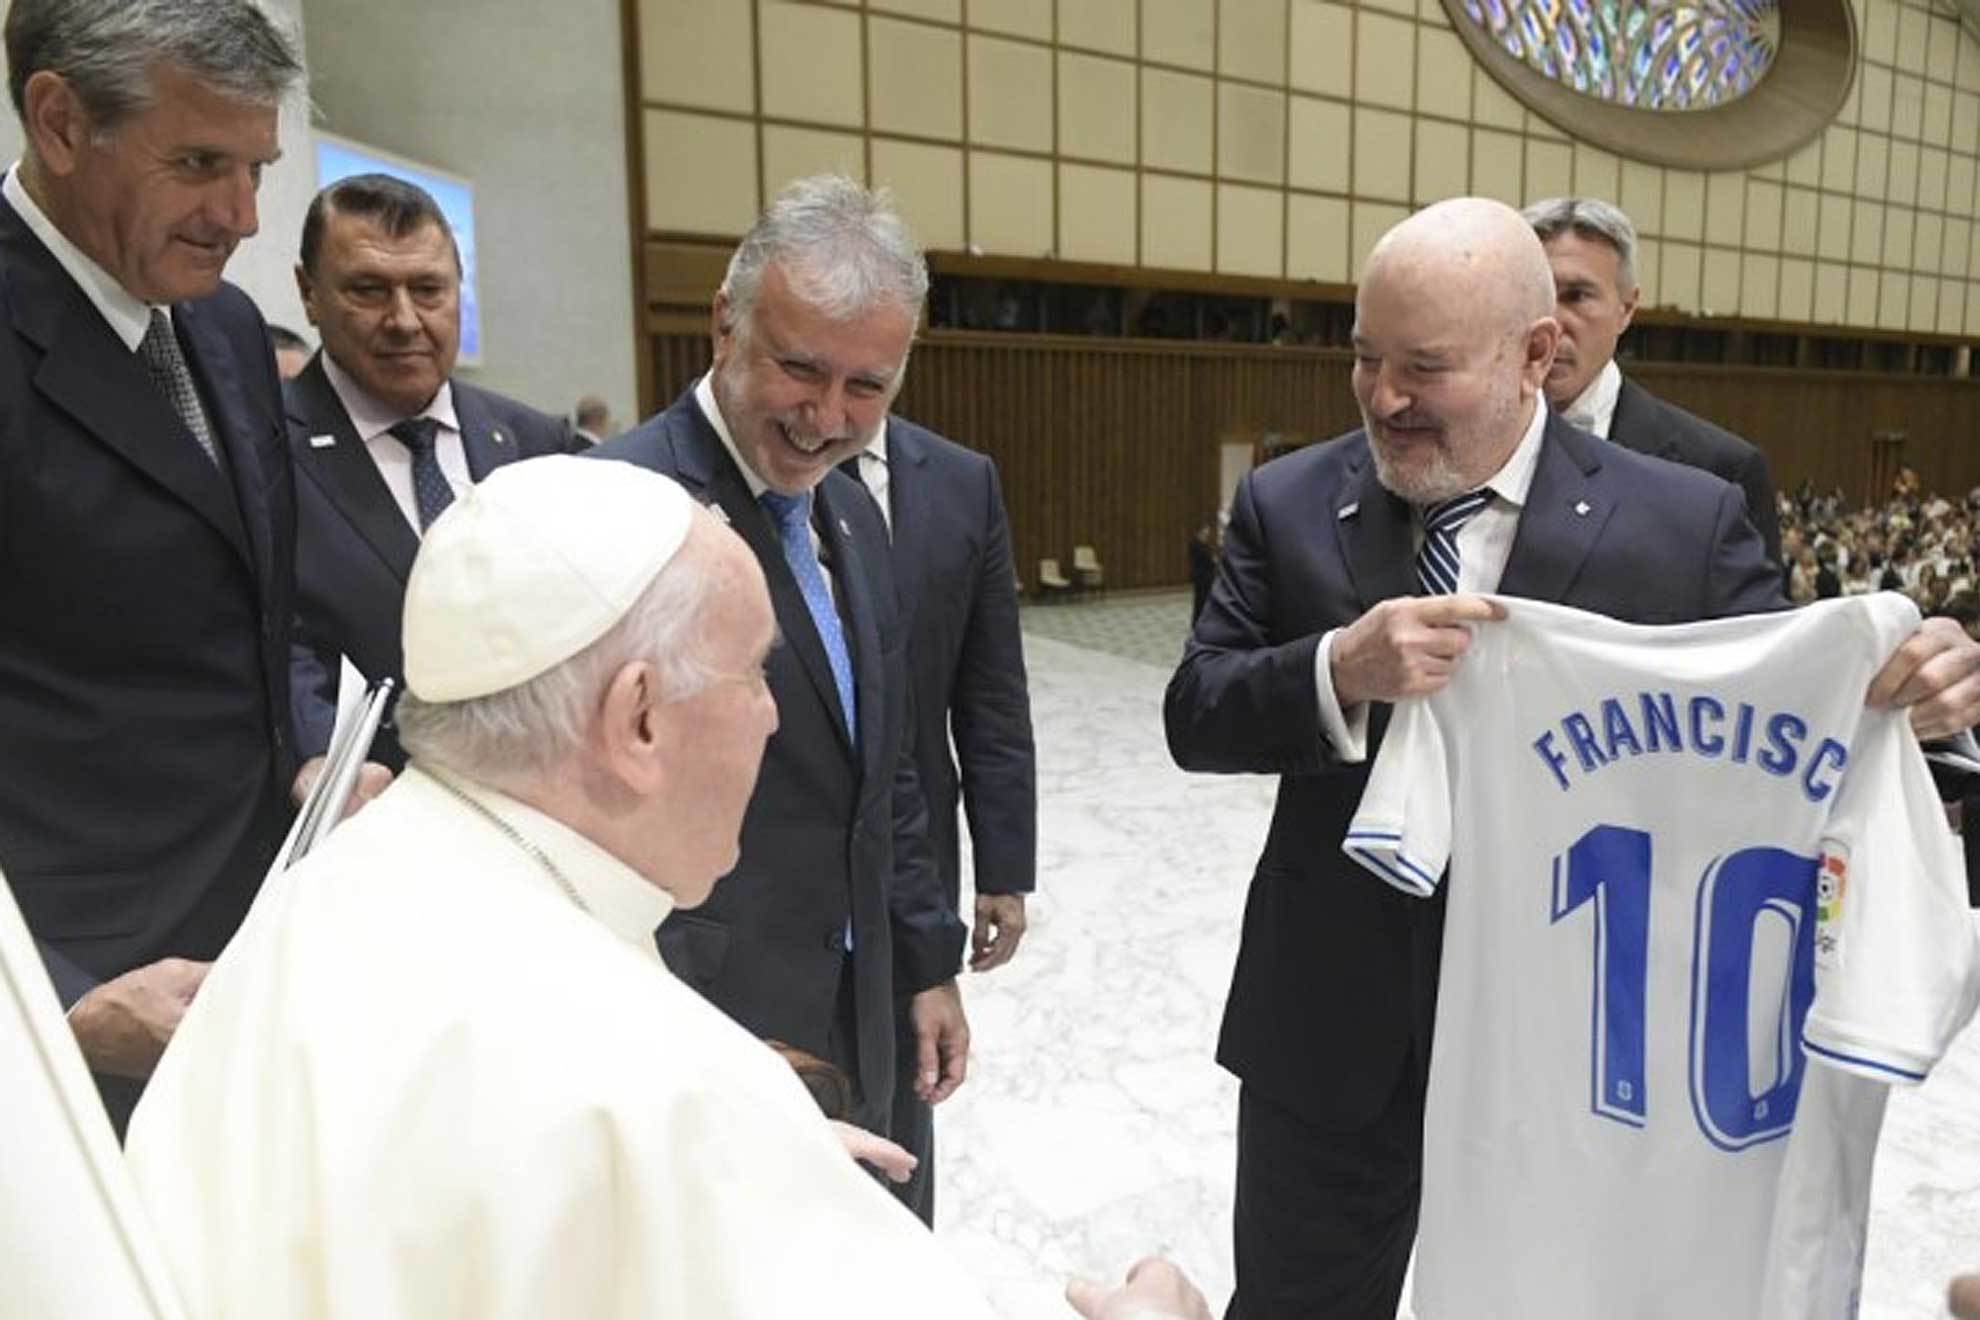 El presidente Miguel Concepción hace entrega al Papa de la camiseta del Tenerife / El Papa Francisco con la camiseta del Tenerife / @CRMedia_Vatican